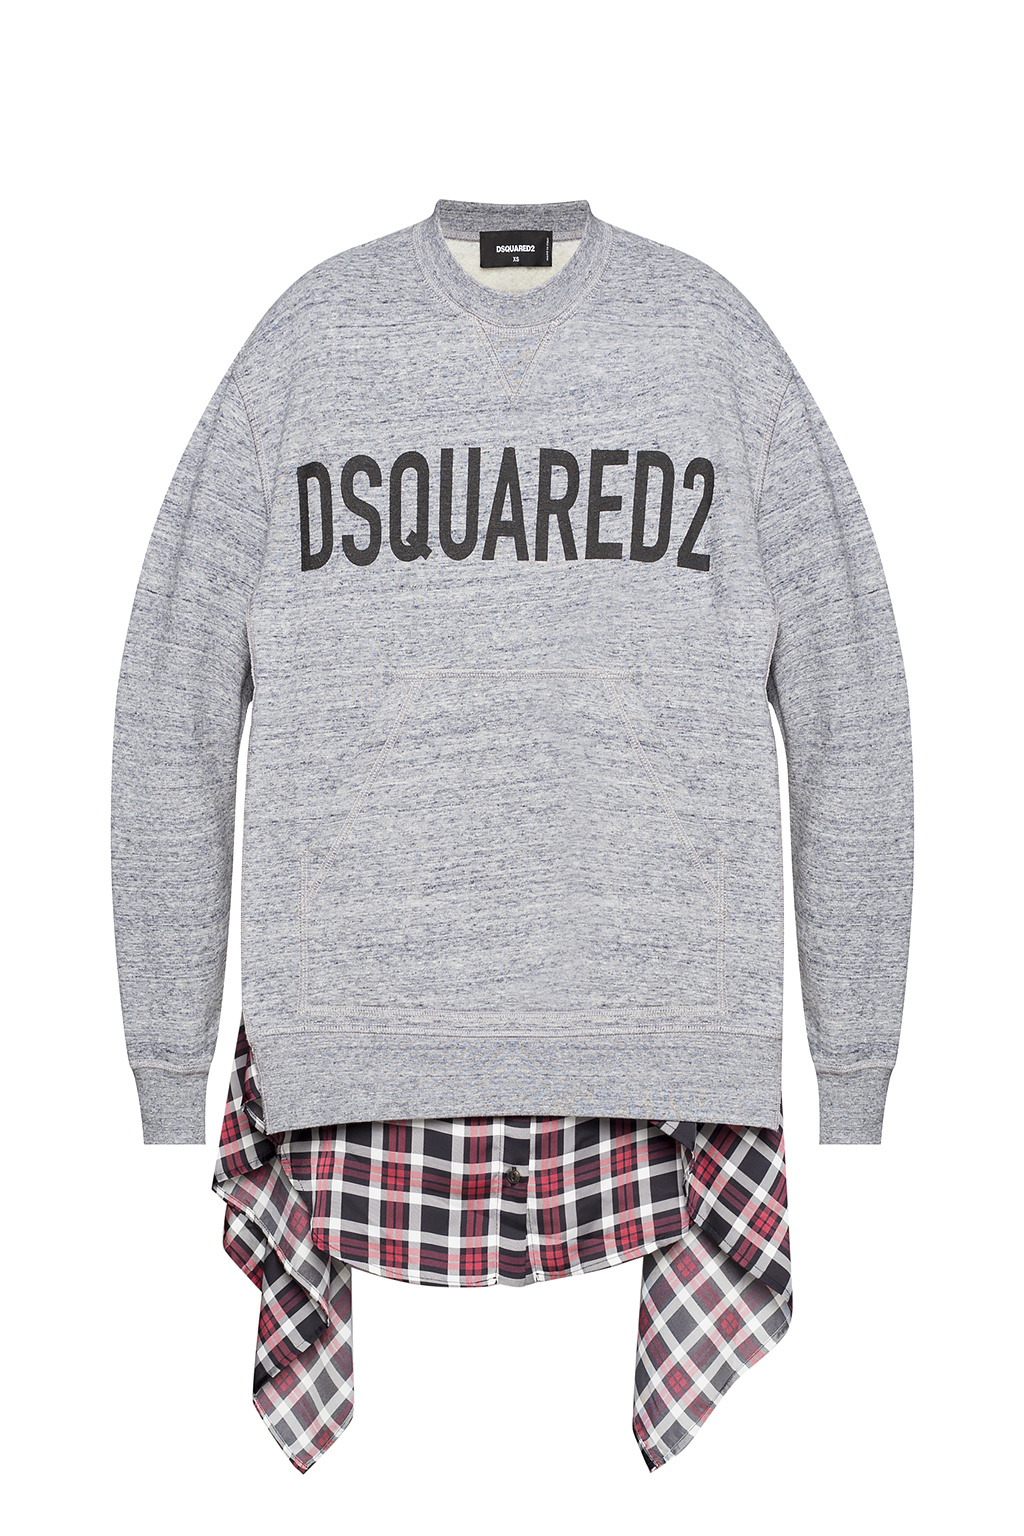 Dsquared2 Sweatshirt with logo | Women's Clothing | IetpShops